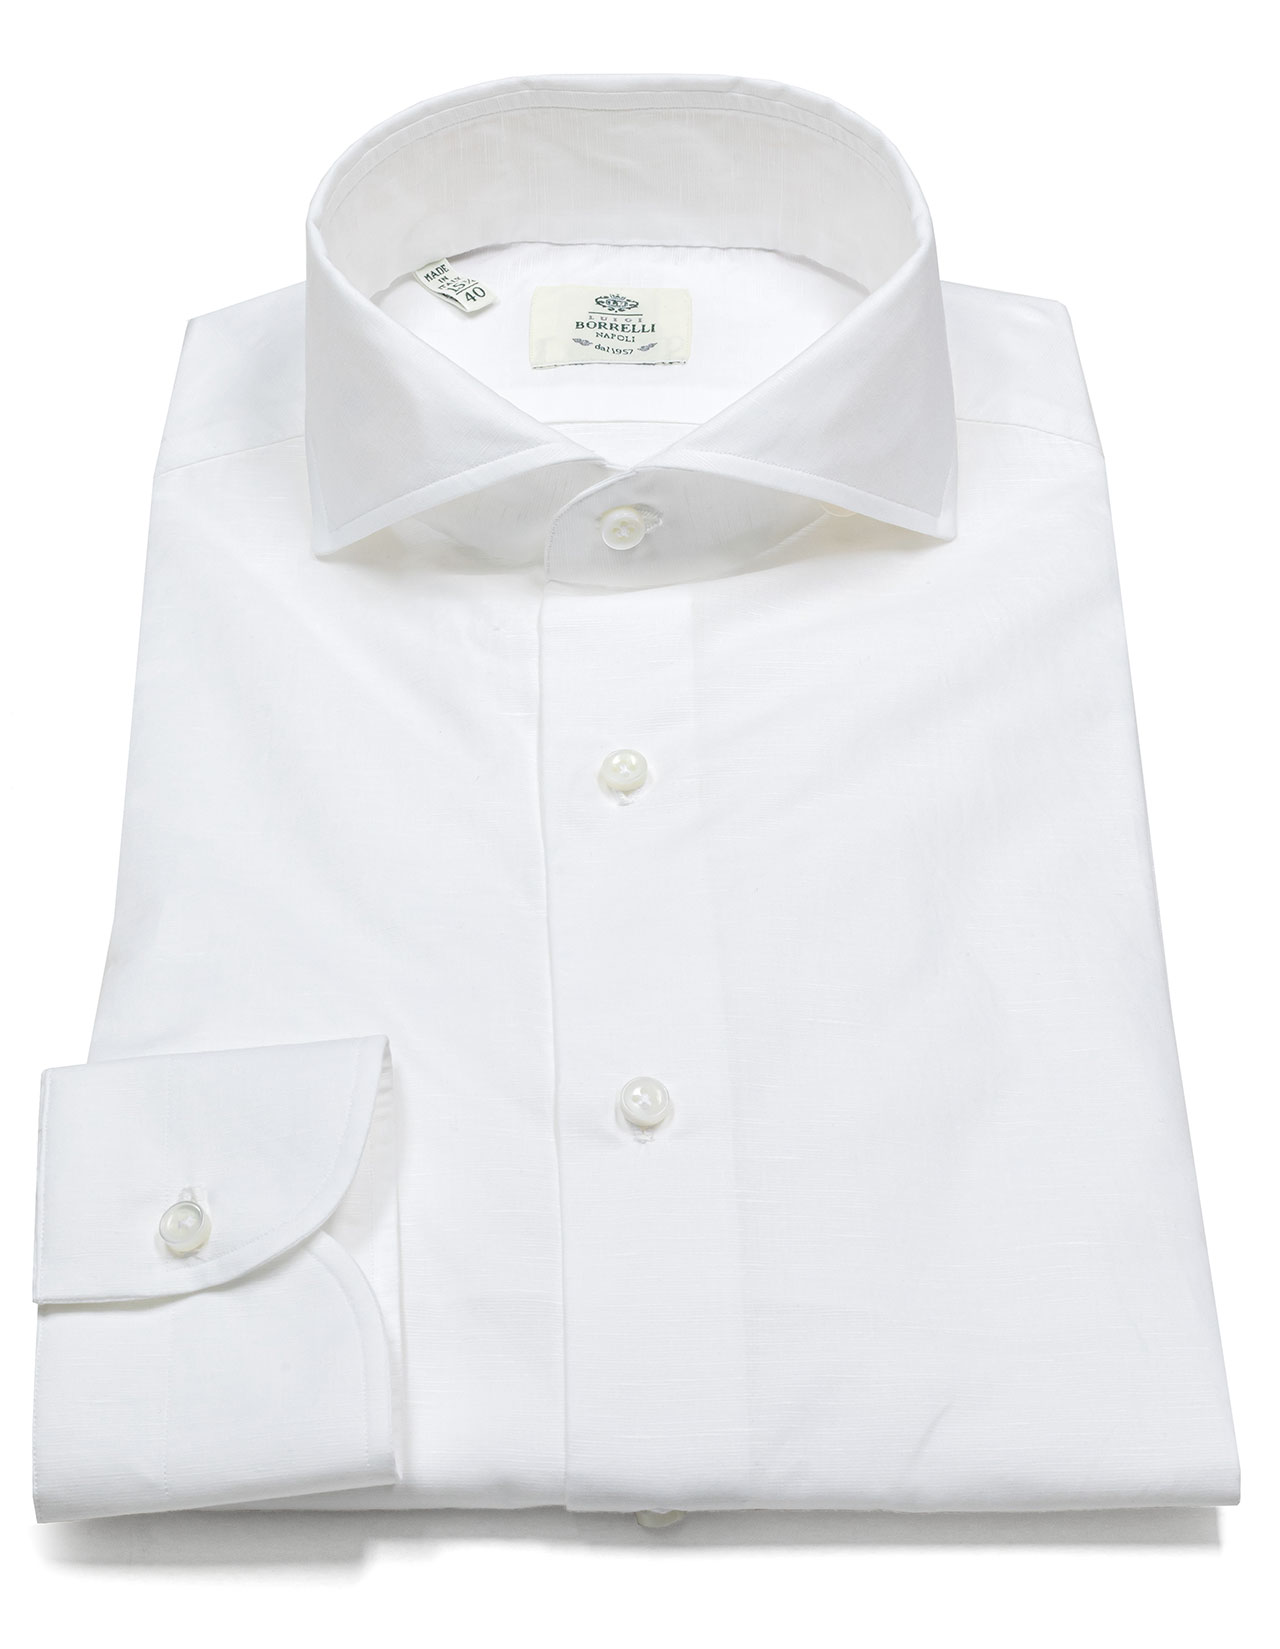 Luigi Borrelli Hemd in weiß strukturiert aus Baumwolle / Leinen mit Haikragen